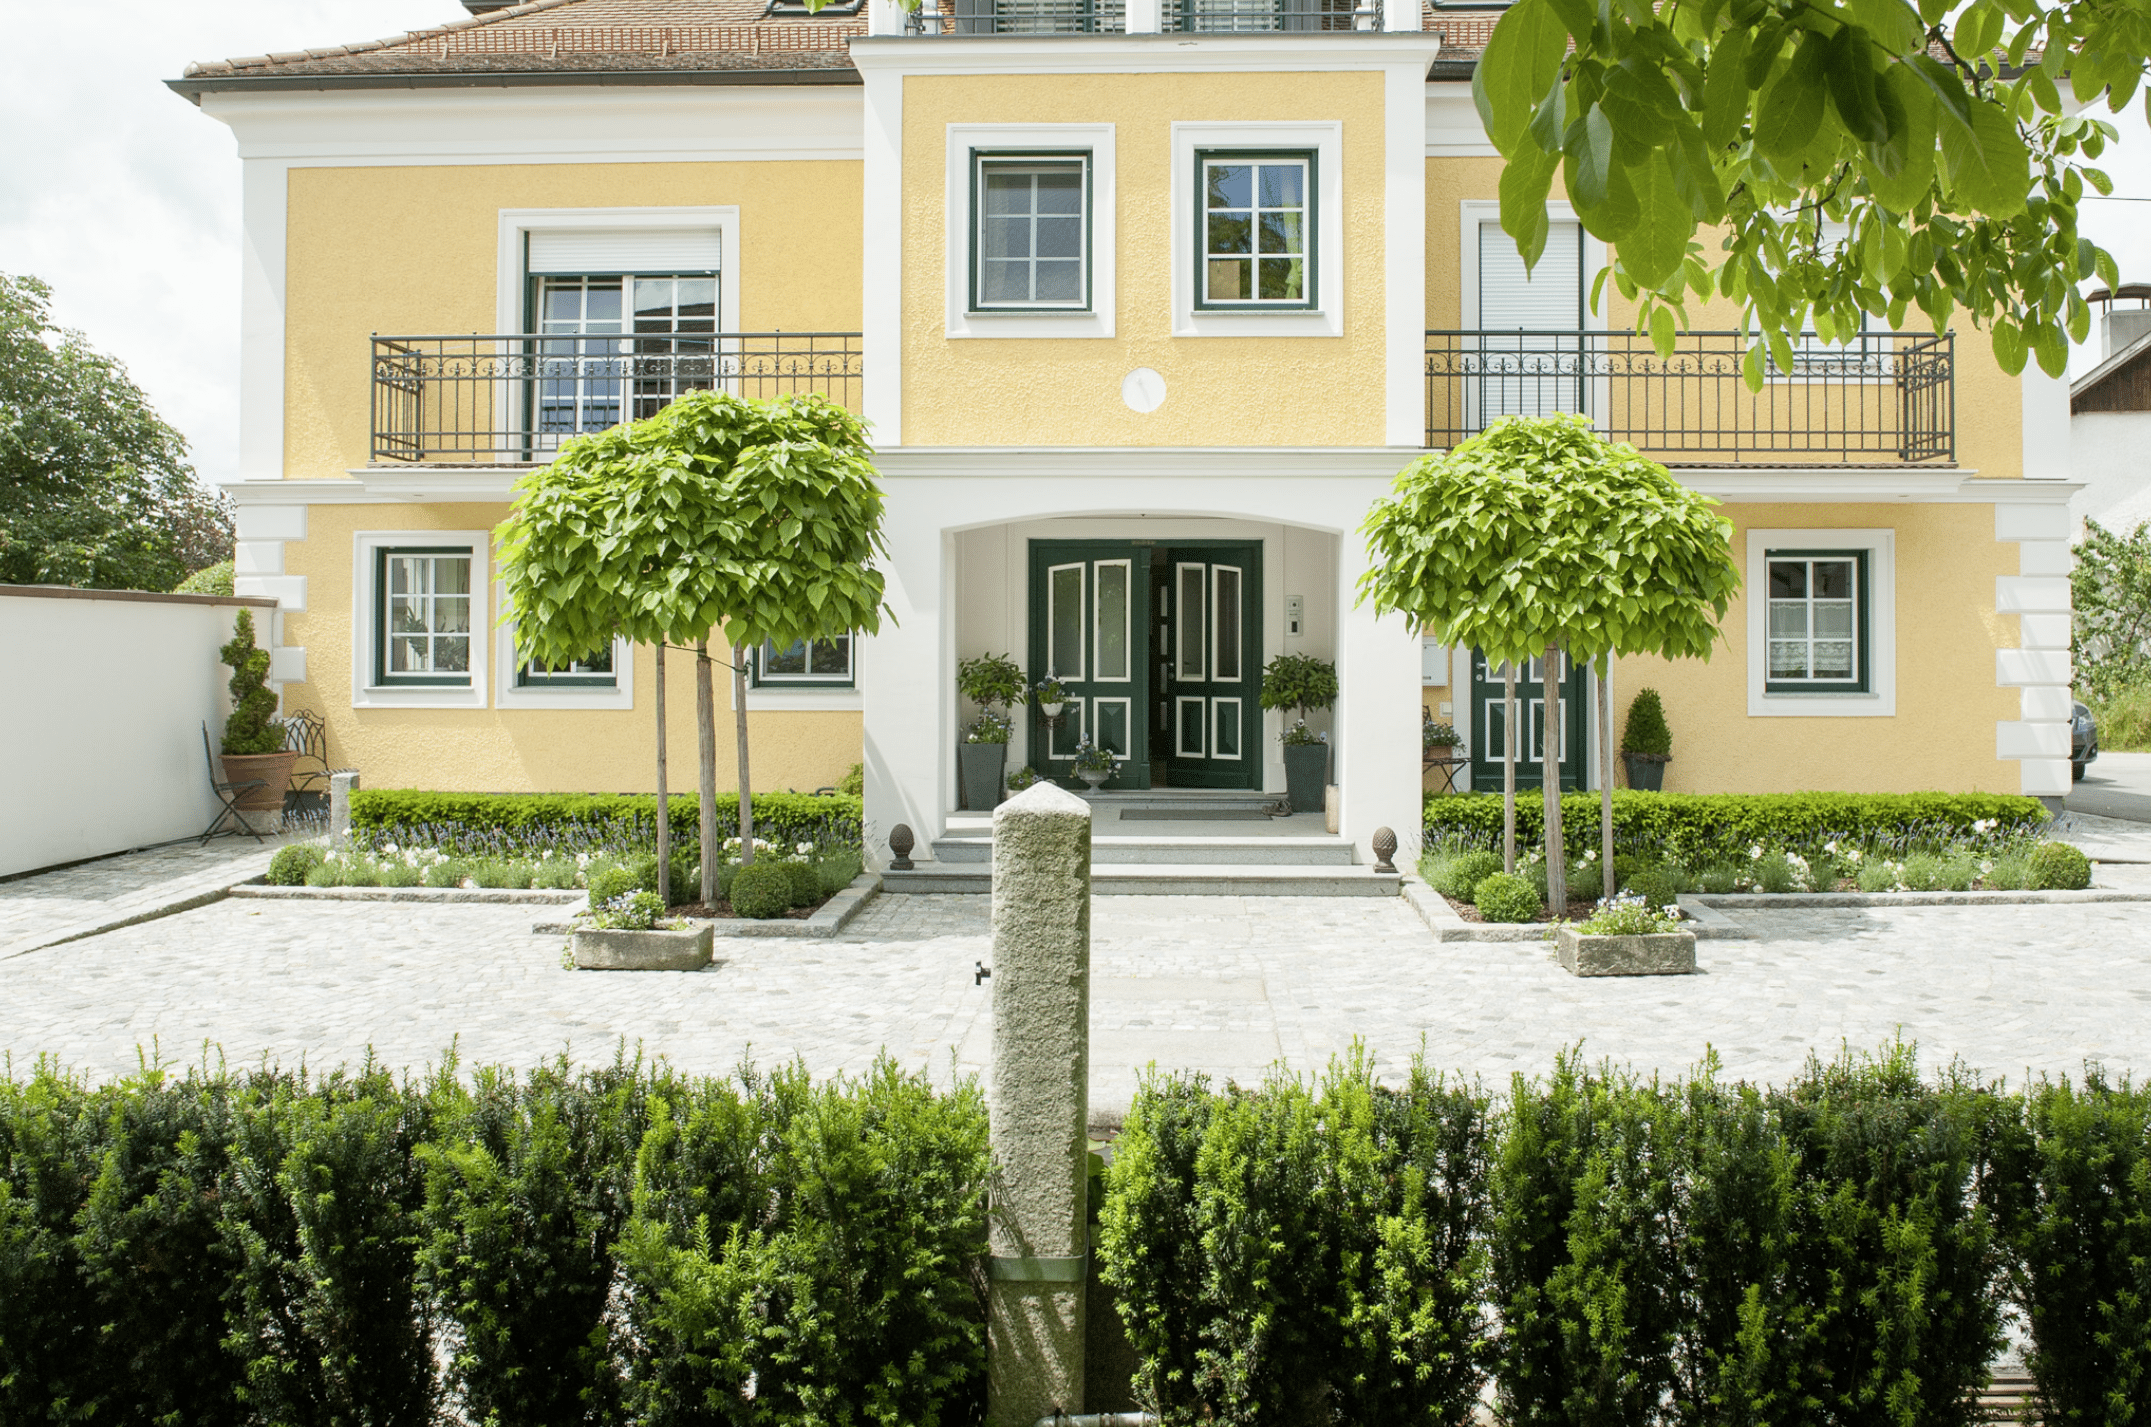 Gartenbau Schmid zeigt die Zufahrt eines großen gelben Hauses mit niedrigen Hecken und zwei Bäumen neben rechts und links neben der Haustüre.